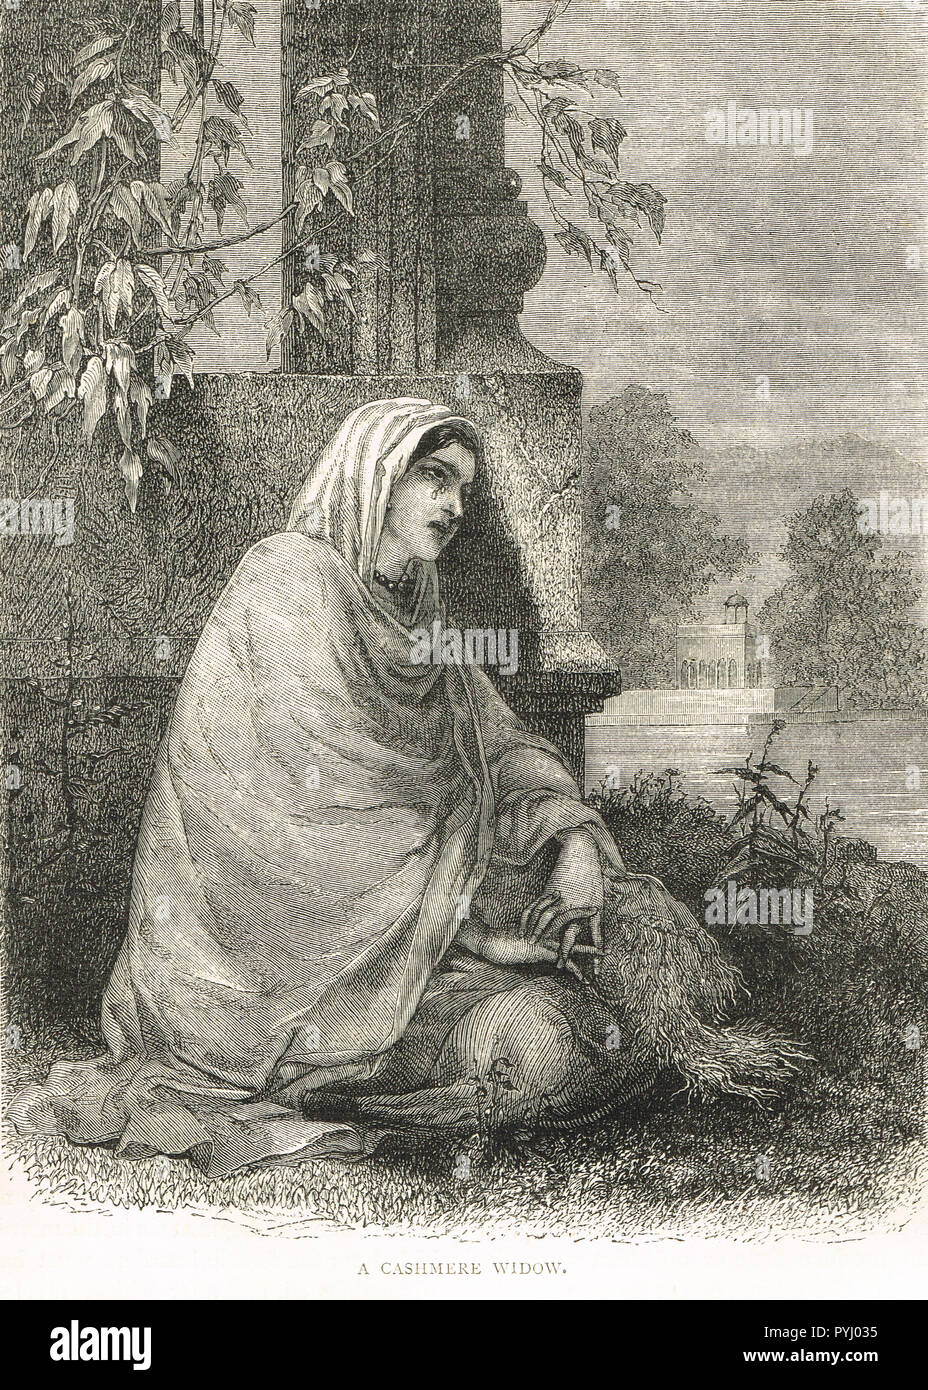 Una vedova del Kashmir indiano, carestia del 1876-78, Kashmir India Foto Stock